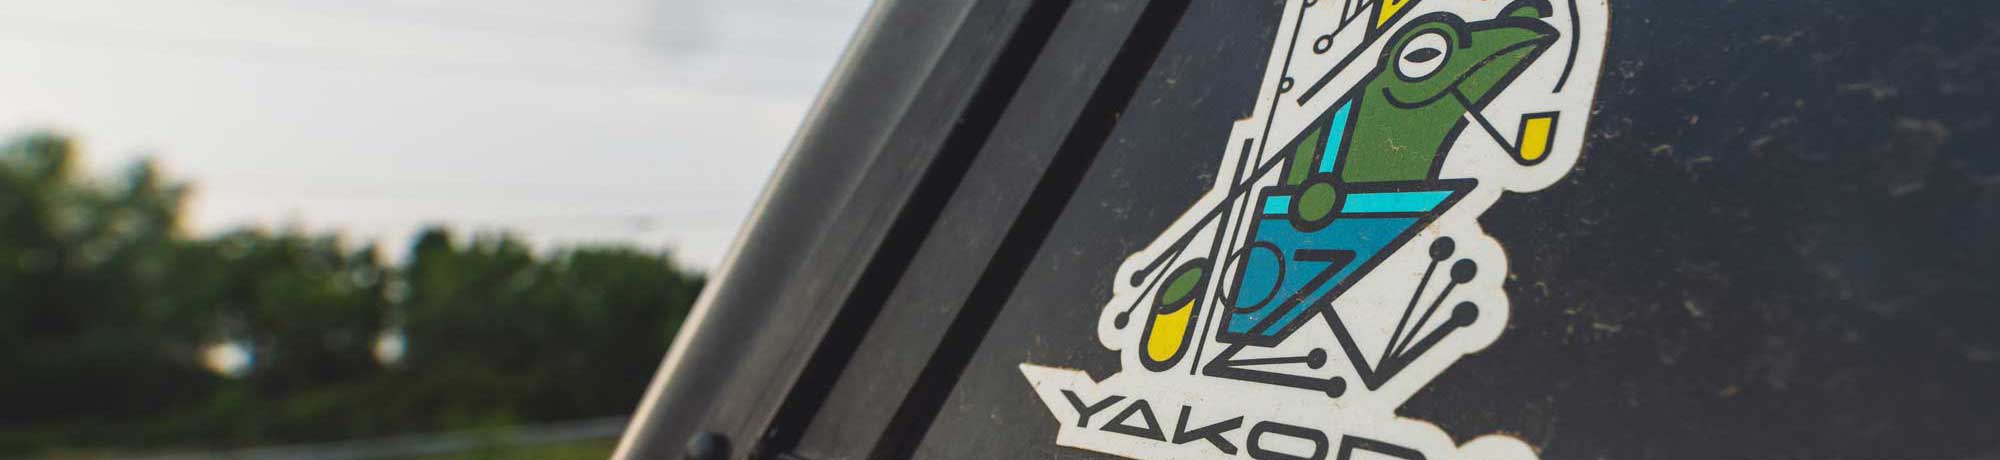 Yakoda Stickers